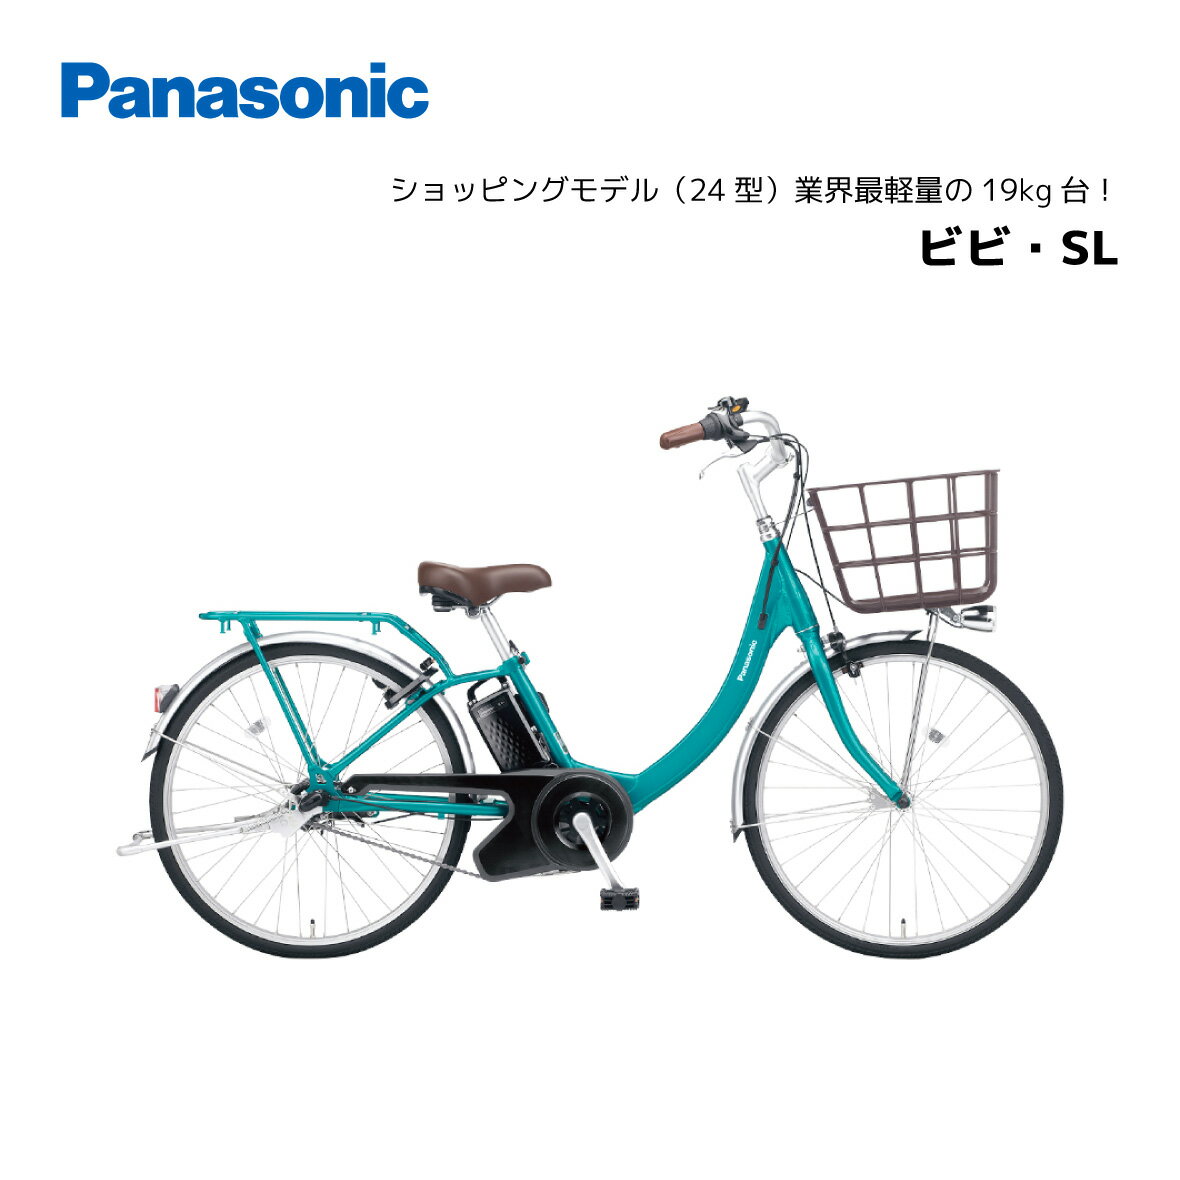 電動自転車 パナソニック ビビ・SL 24インチ BE-FSL433 電動アシスト自転車 panasonic